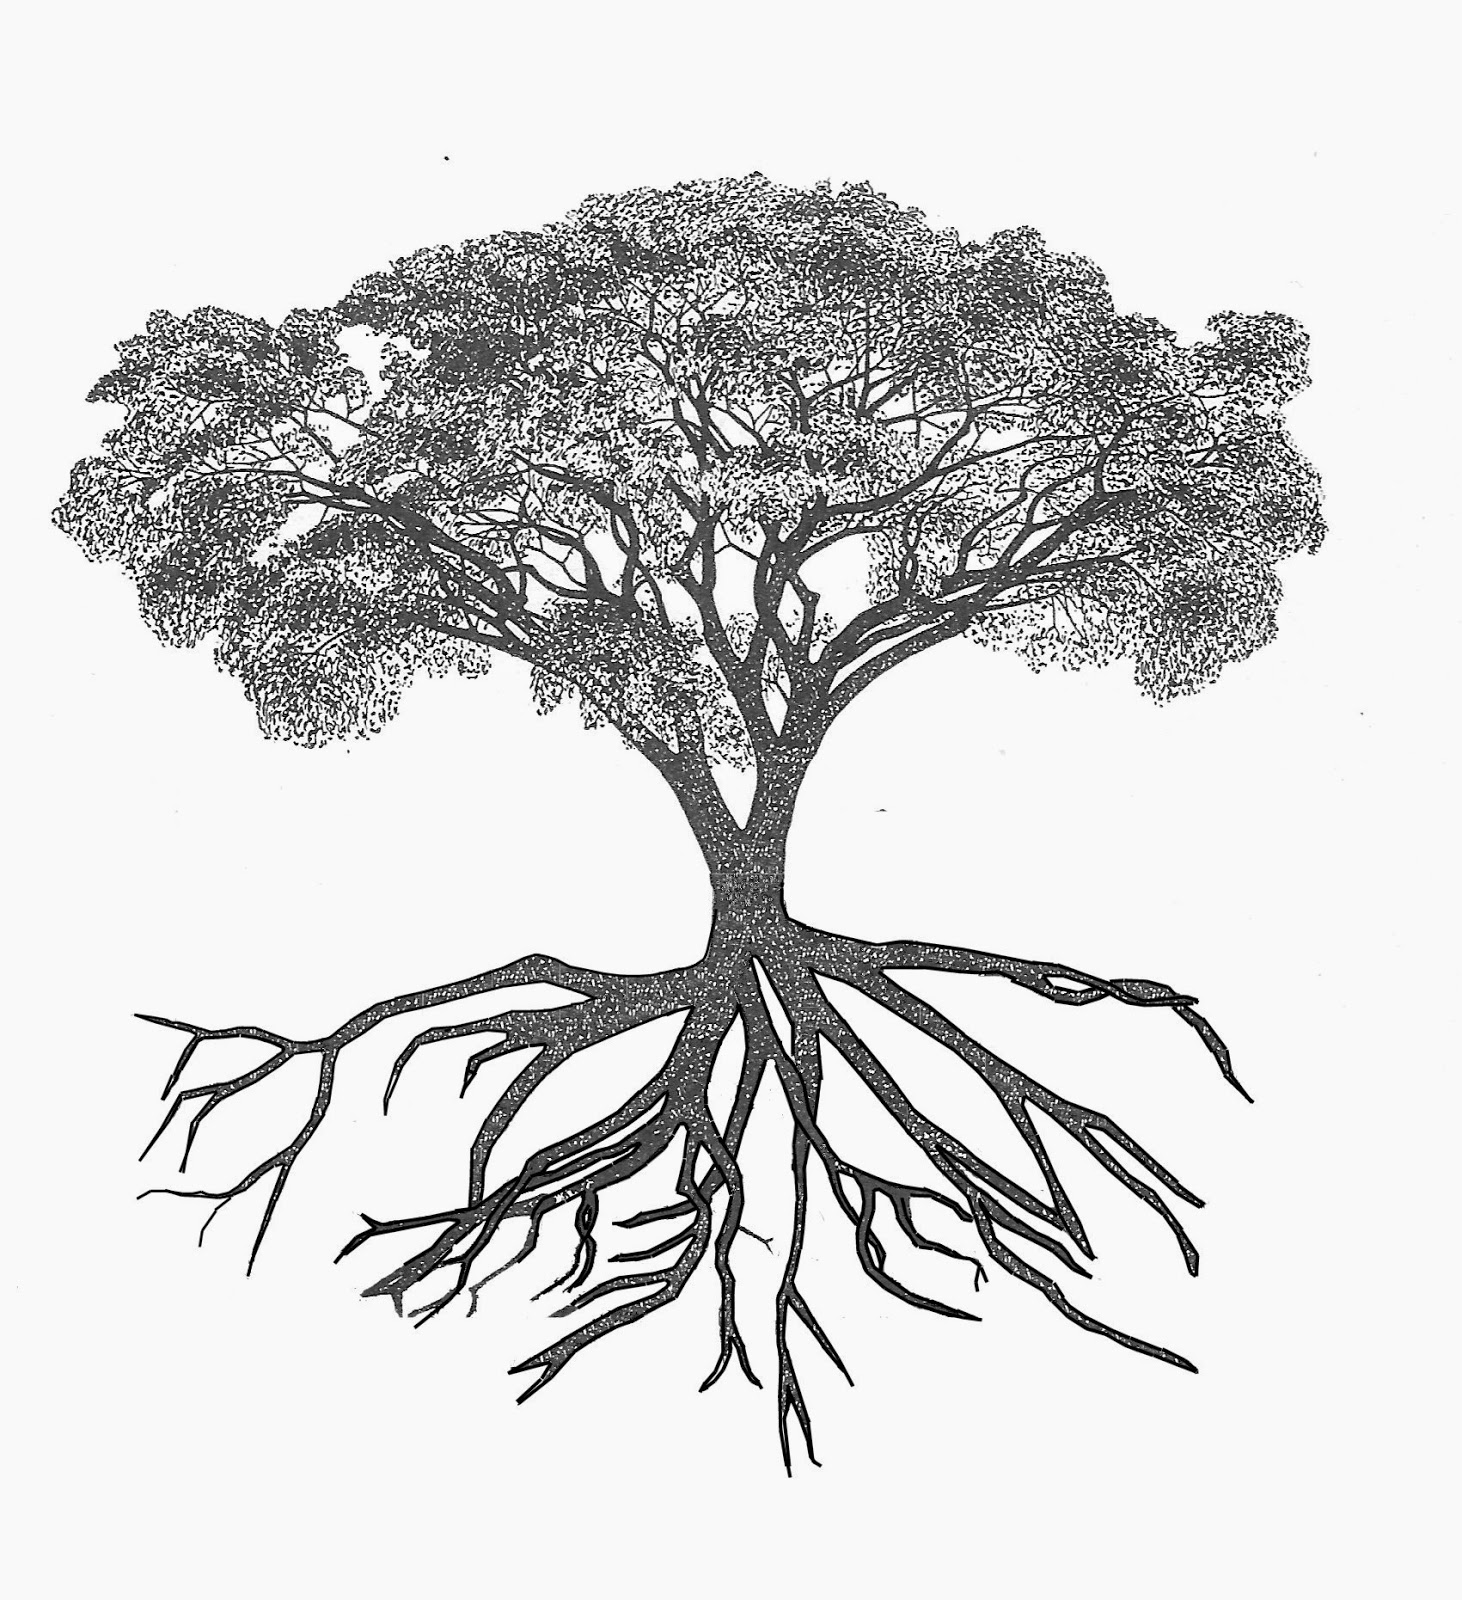 Дерево крона и корни